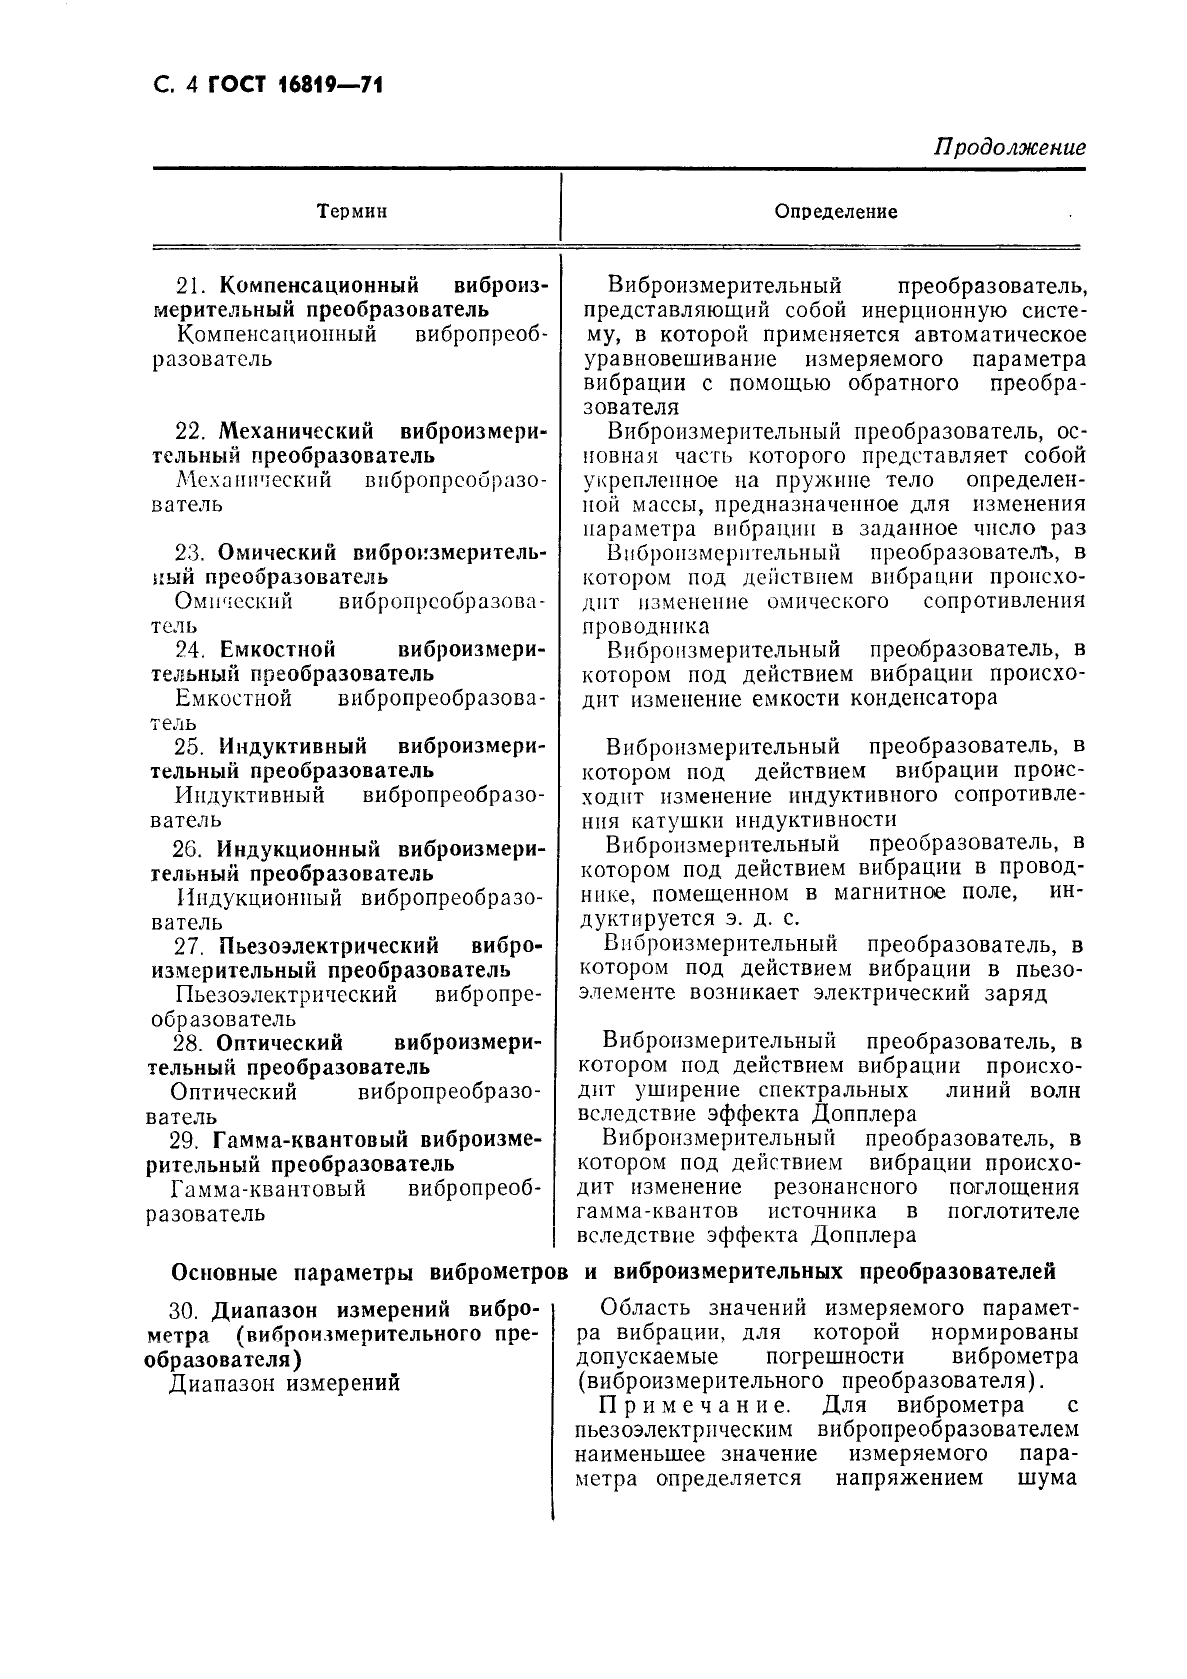 ГОСТ 16819-71 Приборы виброизмерительные. Термины и определения (фото 5 из 10)